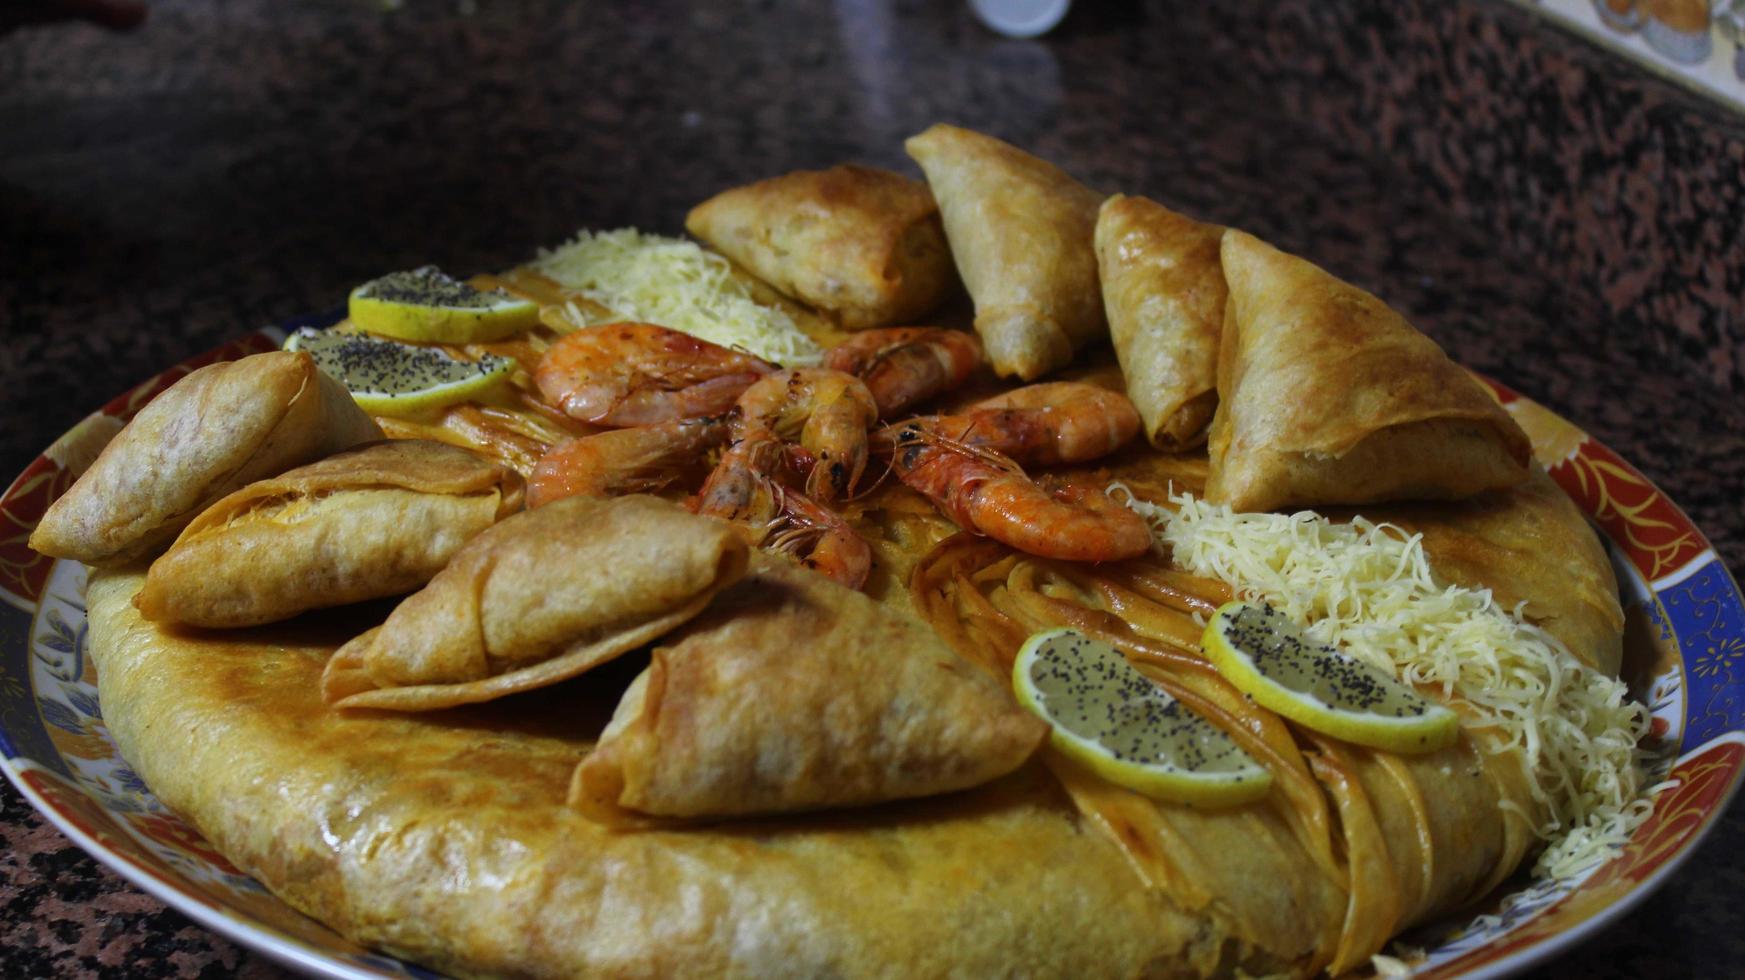 traditionell marokkanisch Essen Pastille Fisch foto